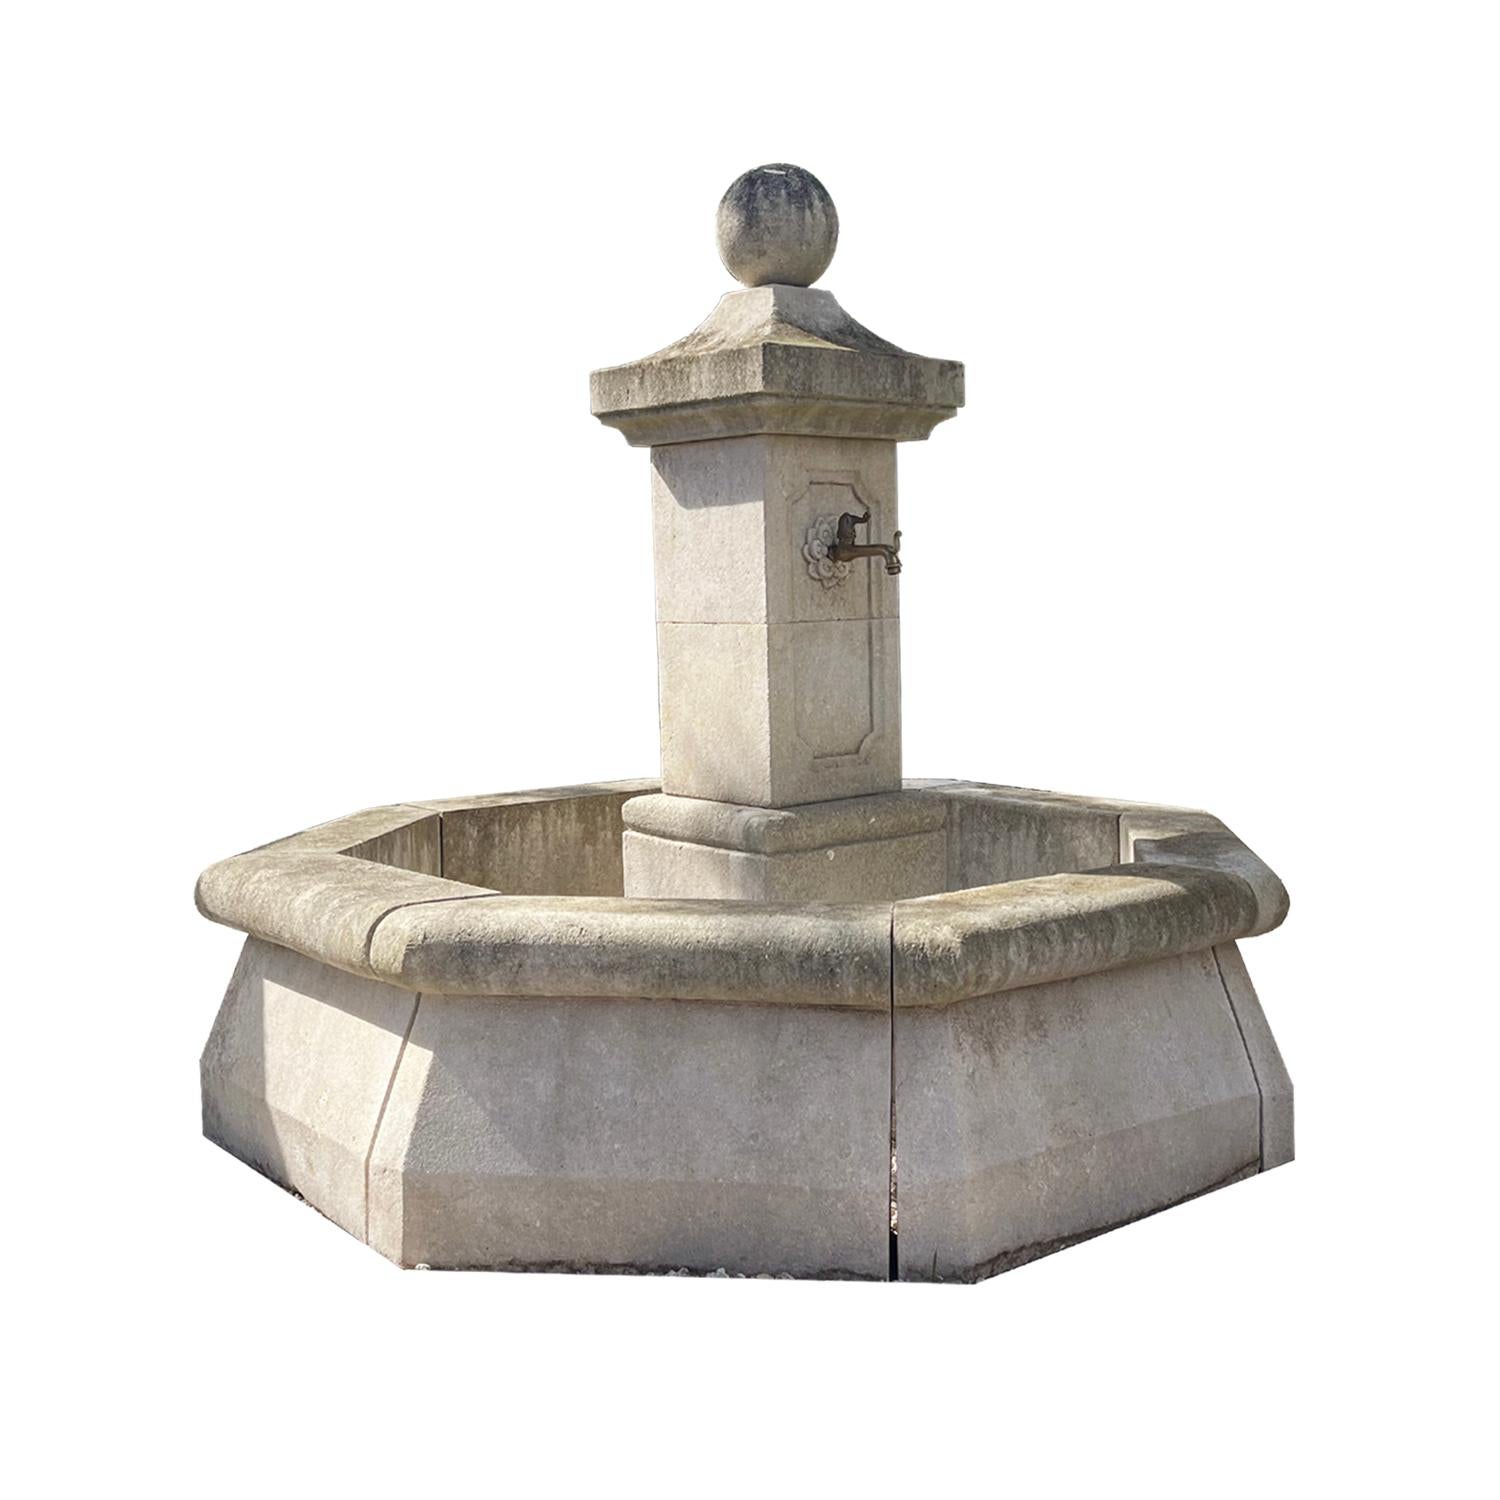 La fontaine de jardin octogonale très traditionnelle a été sculptée à la main dans la pierre calcaire d'après un original du XVIIIe siècle (fontaine du réservoir) et peut encore être vue de nos jours dans les villages français. Cette fontaine